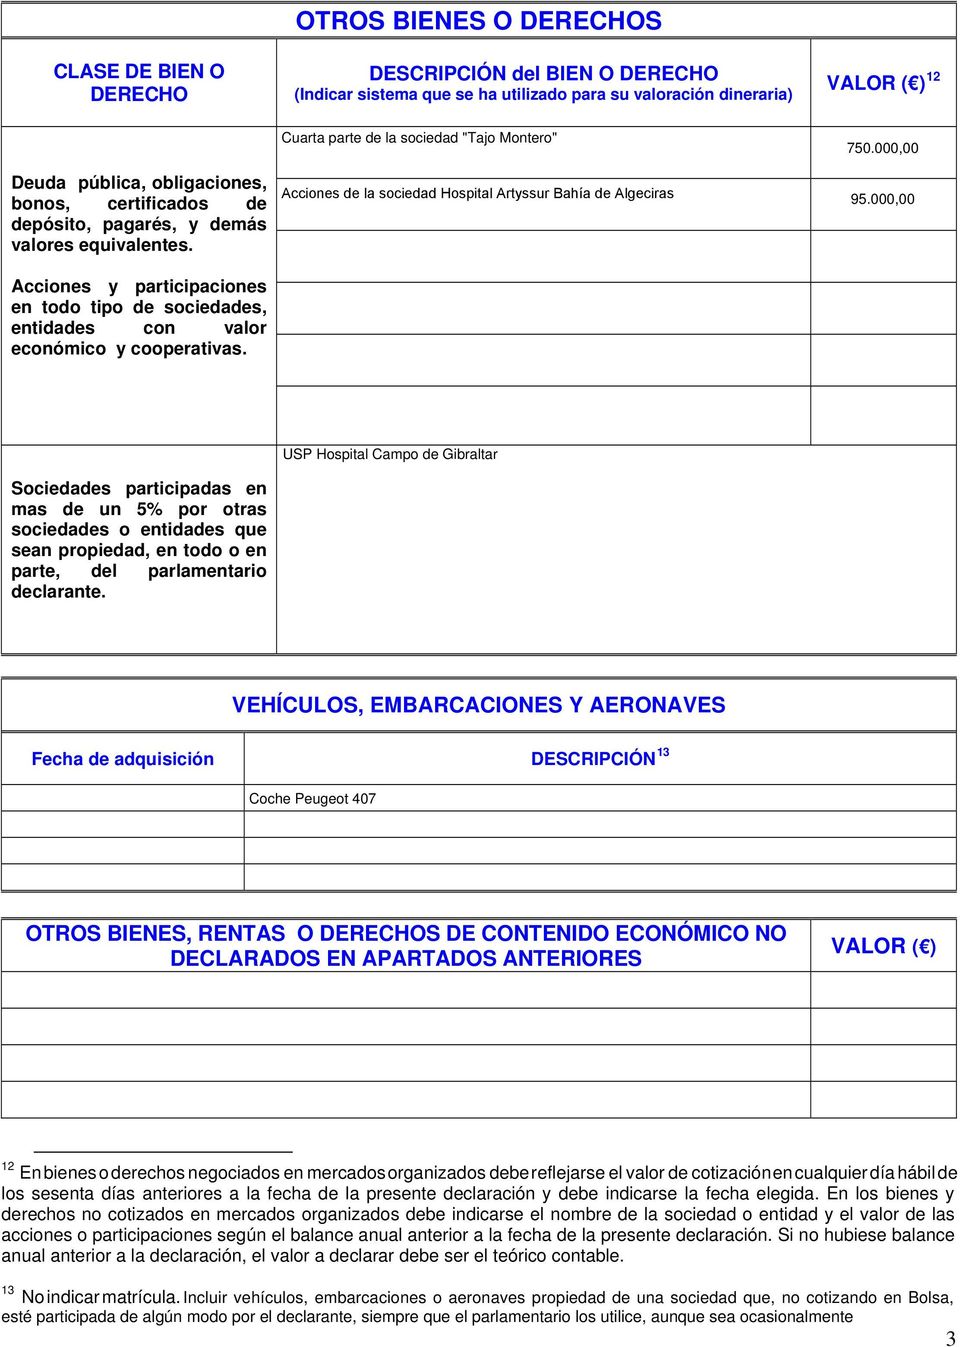 Cuarta parte de la sociedad "Tajo Montero" Acciones de la sociedad Hospital Artyssur Bahía de Algeciras 750.000,00 95.